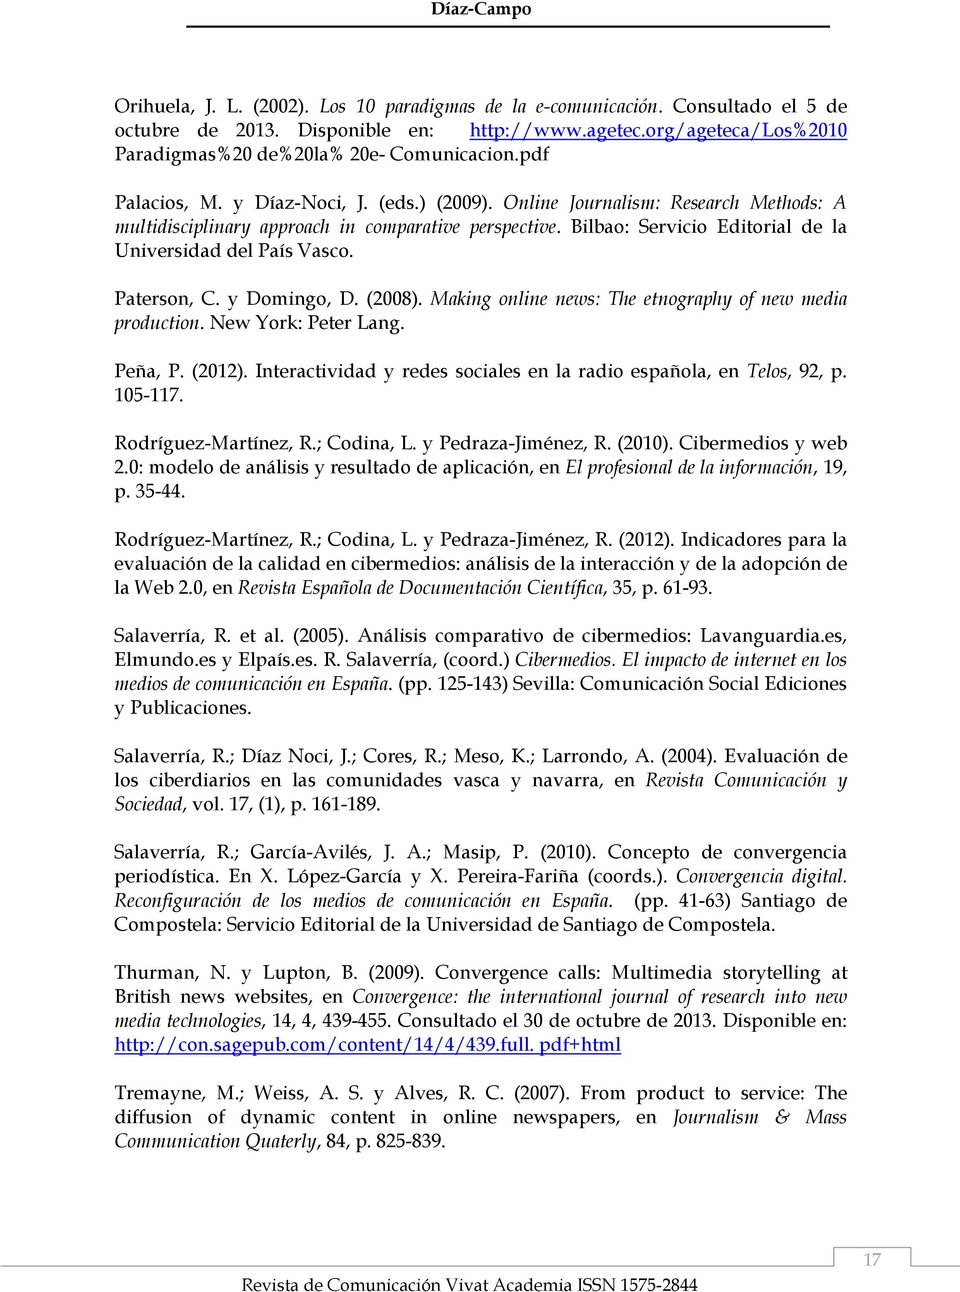 Online Journalism: Research Methods: A multidisciplinary approach in comparative perspective. Bilbao: Servicio Editorial de la Universidad del País Vasco. Paterson, C. y Domingo, D. (2008).